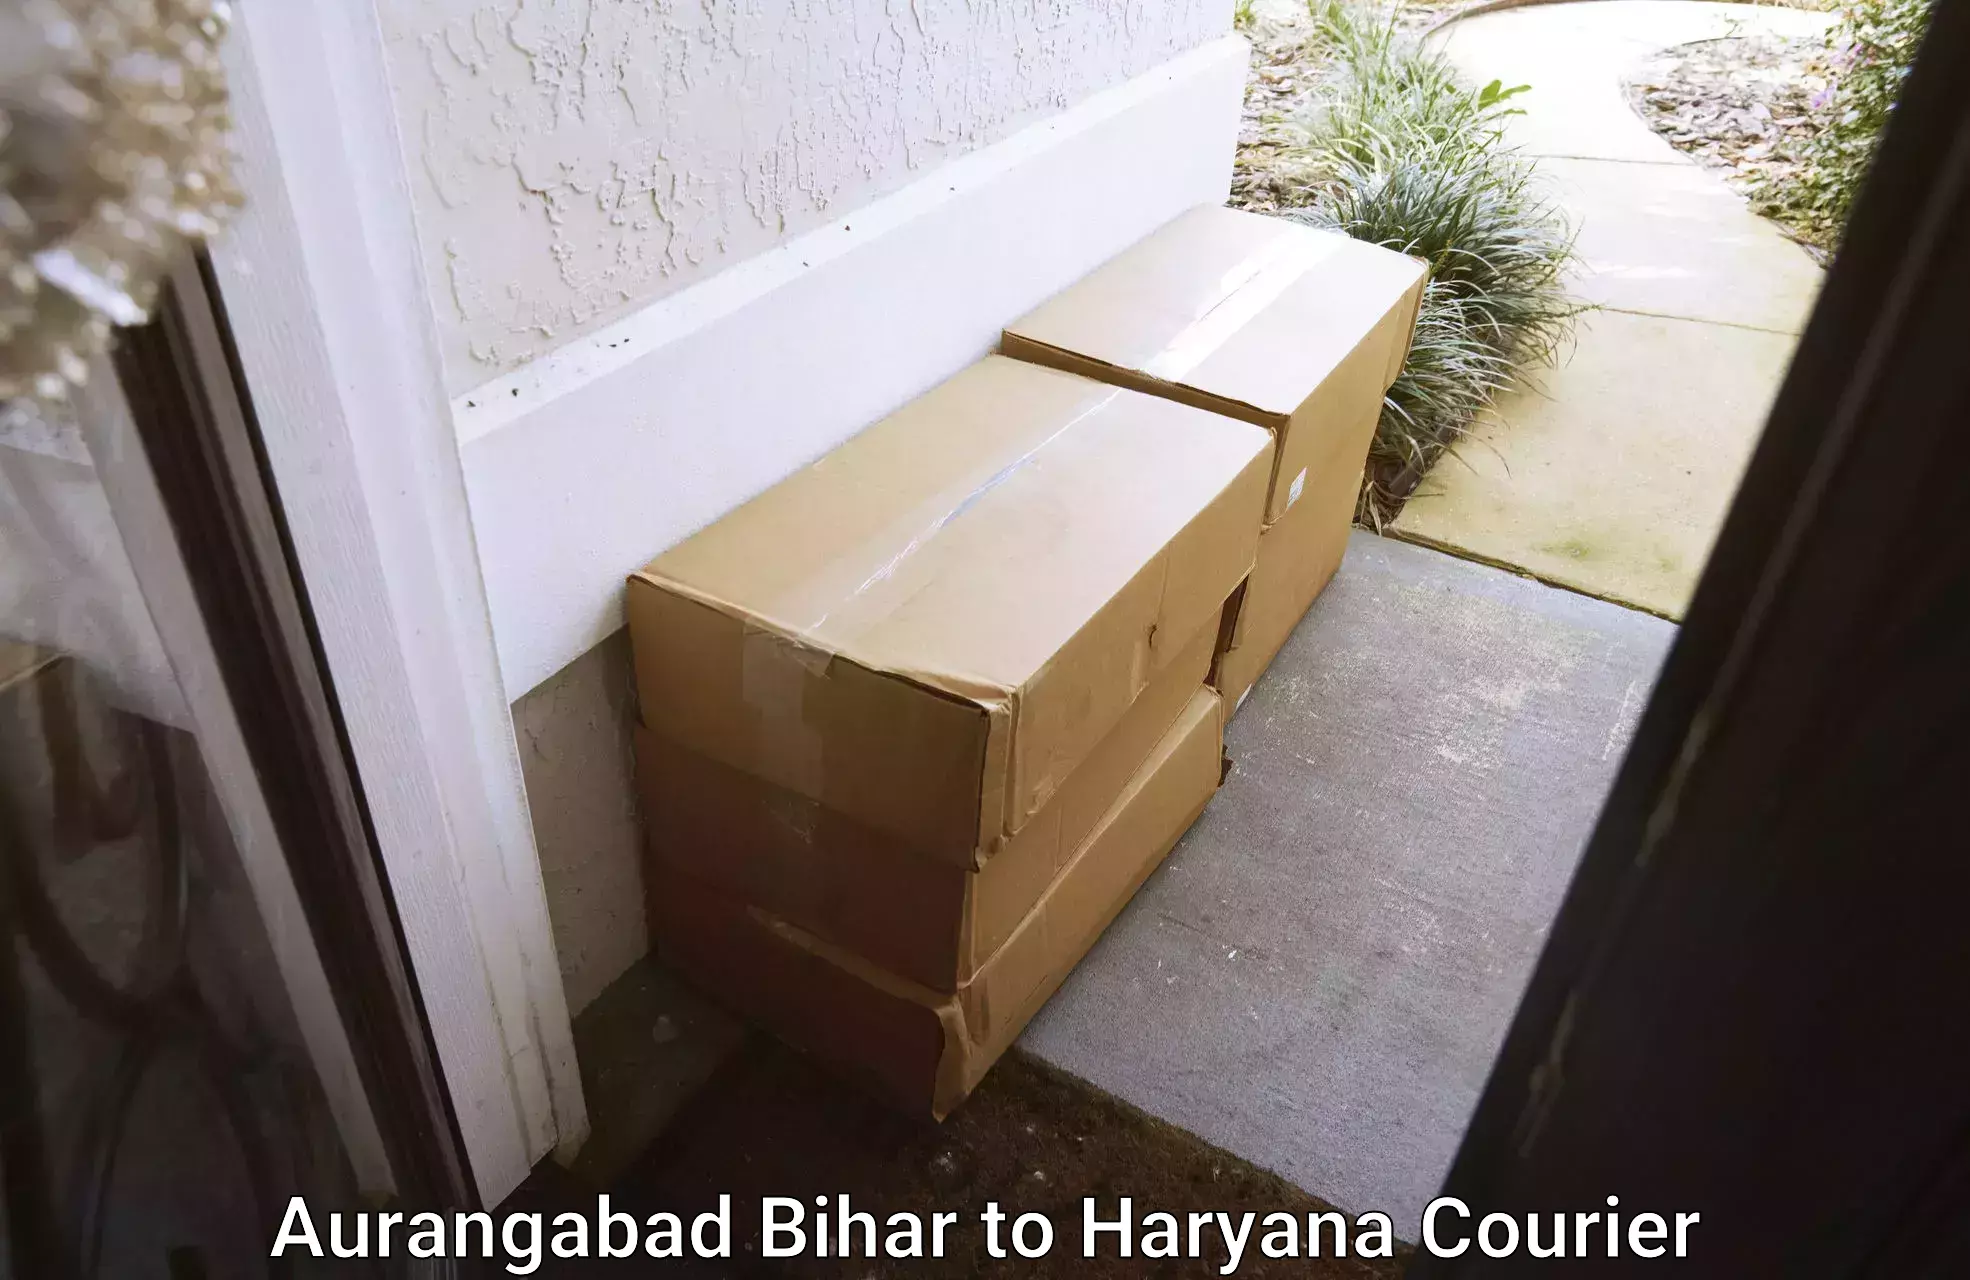 Furniture transport experts Aurangabad Bihar to Nuh